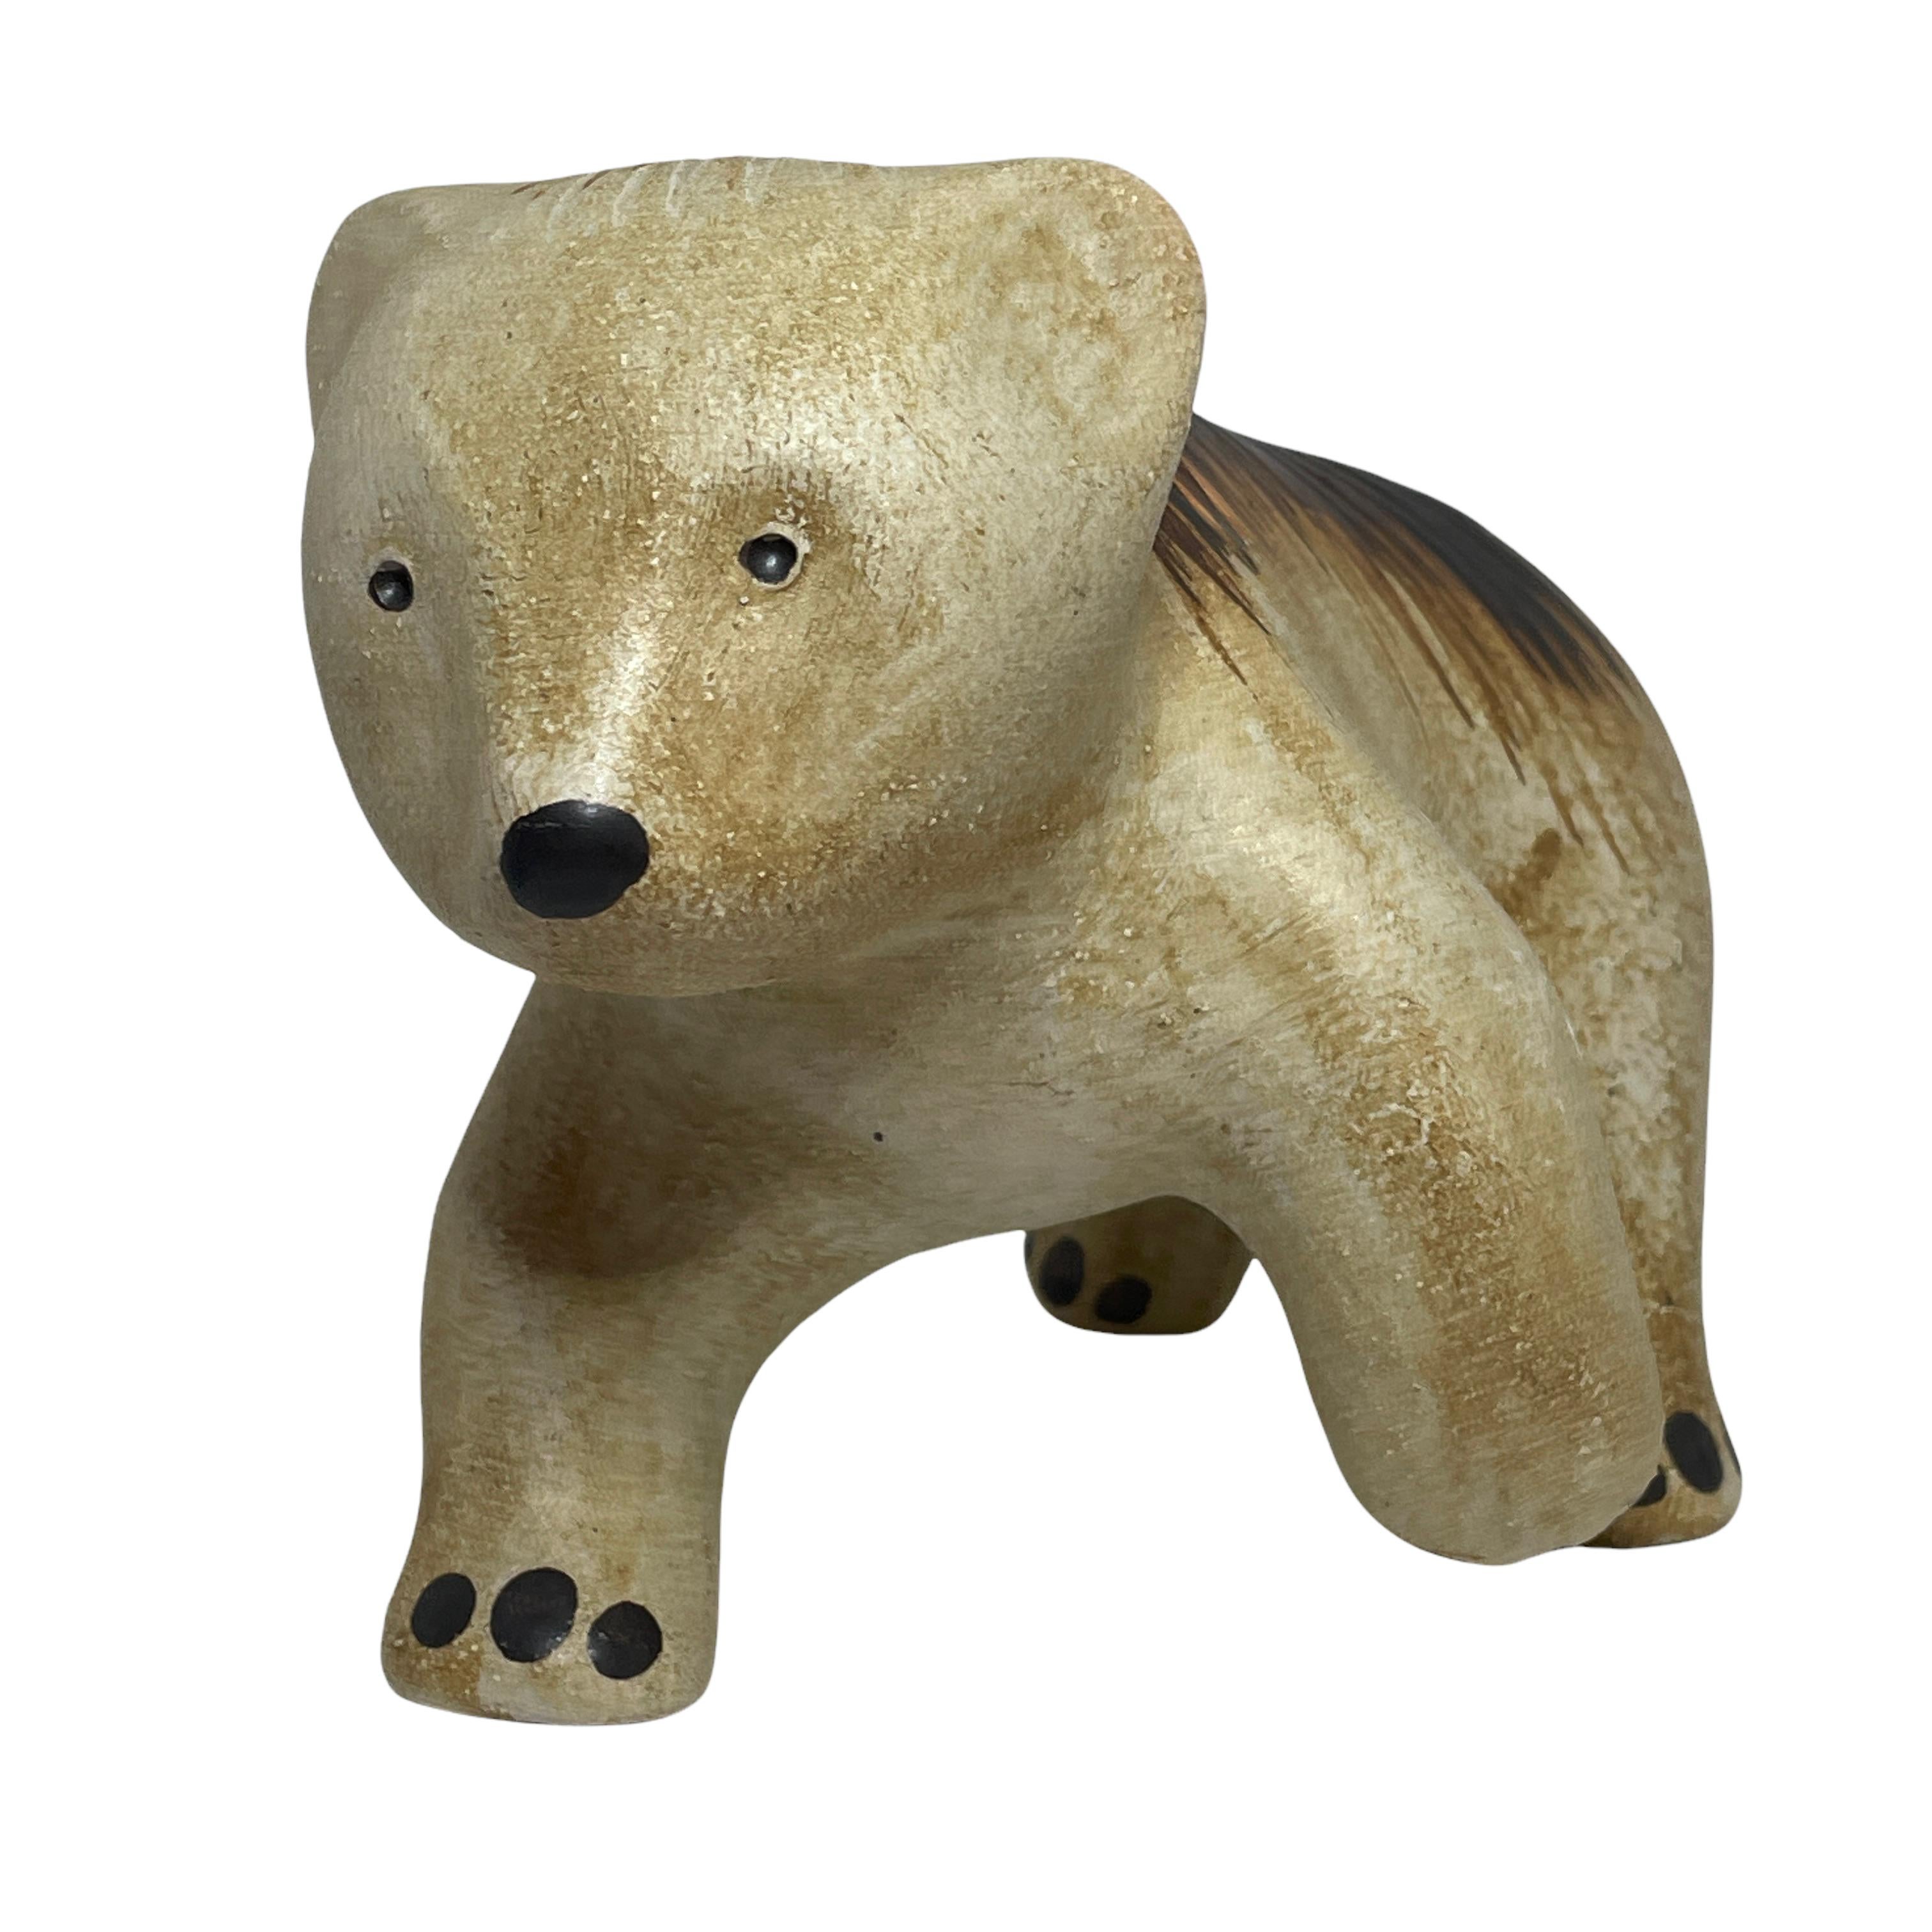 Une magnifique statue d'ours figurative en céramique de caractère - Sgrafo Ceramic. Cette statue de personnage a été fabriquée dans les années 1970. Article absolument magnifique avec signature et toujours en excellent état, sans dommage.